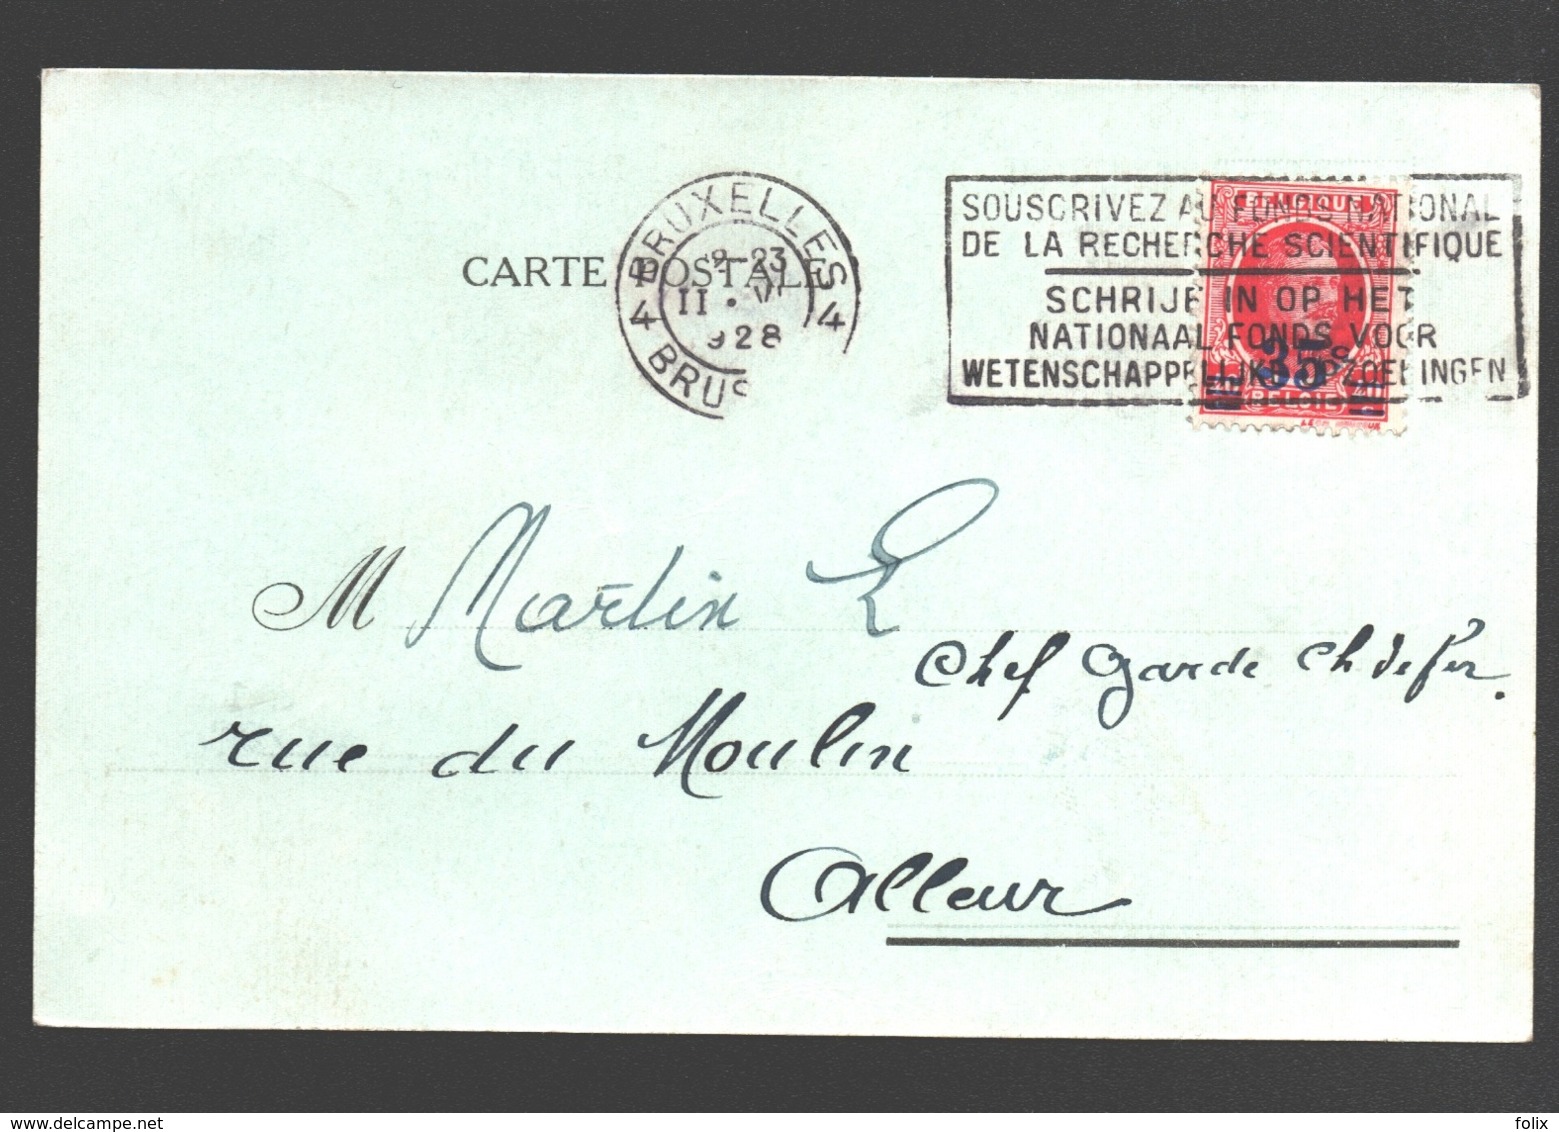 Union Hypothécaire - Fonds De Garantie - 1928 - Carte Postale - Bank & Insurance